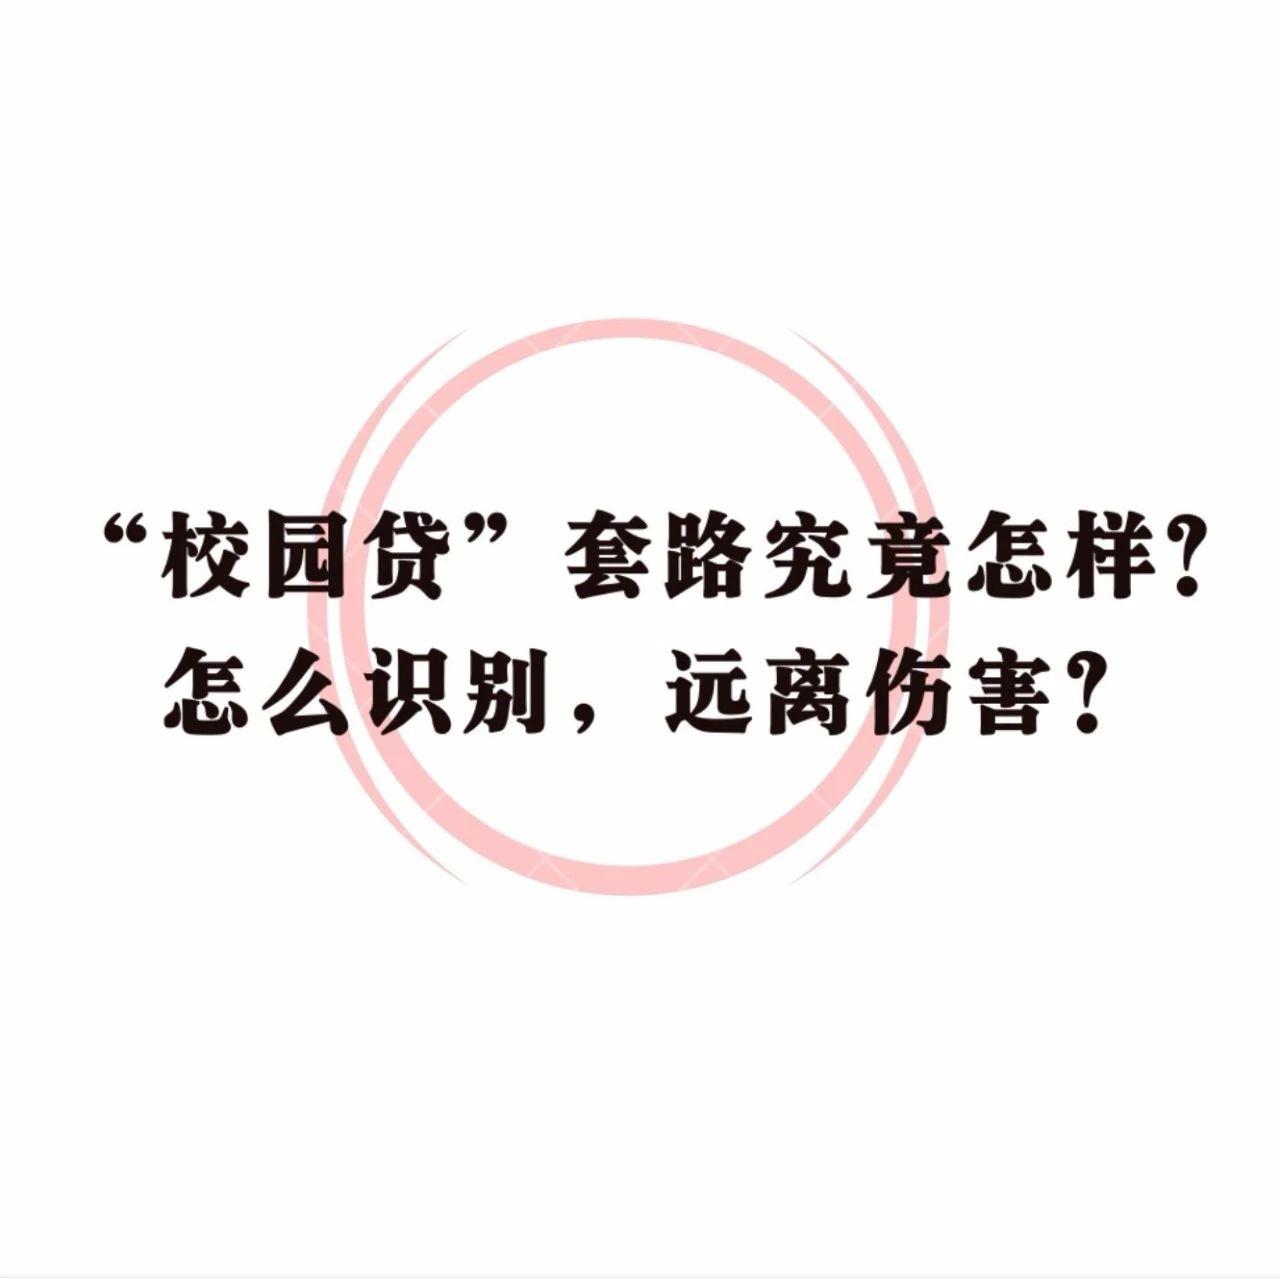 提醒广大学生和家长警惕多种形式的校园贷诈骗,上海,长沙等地也发文